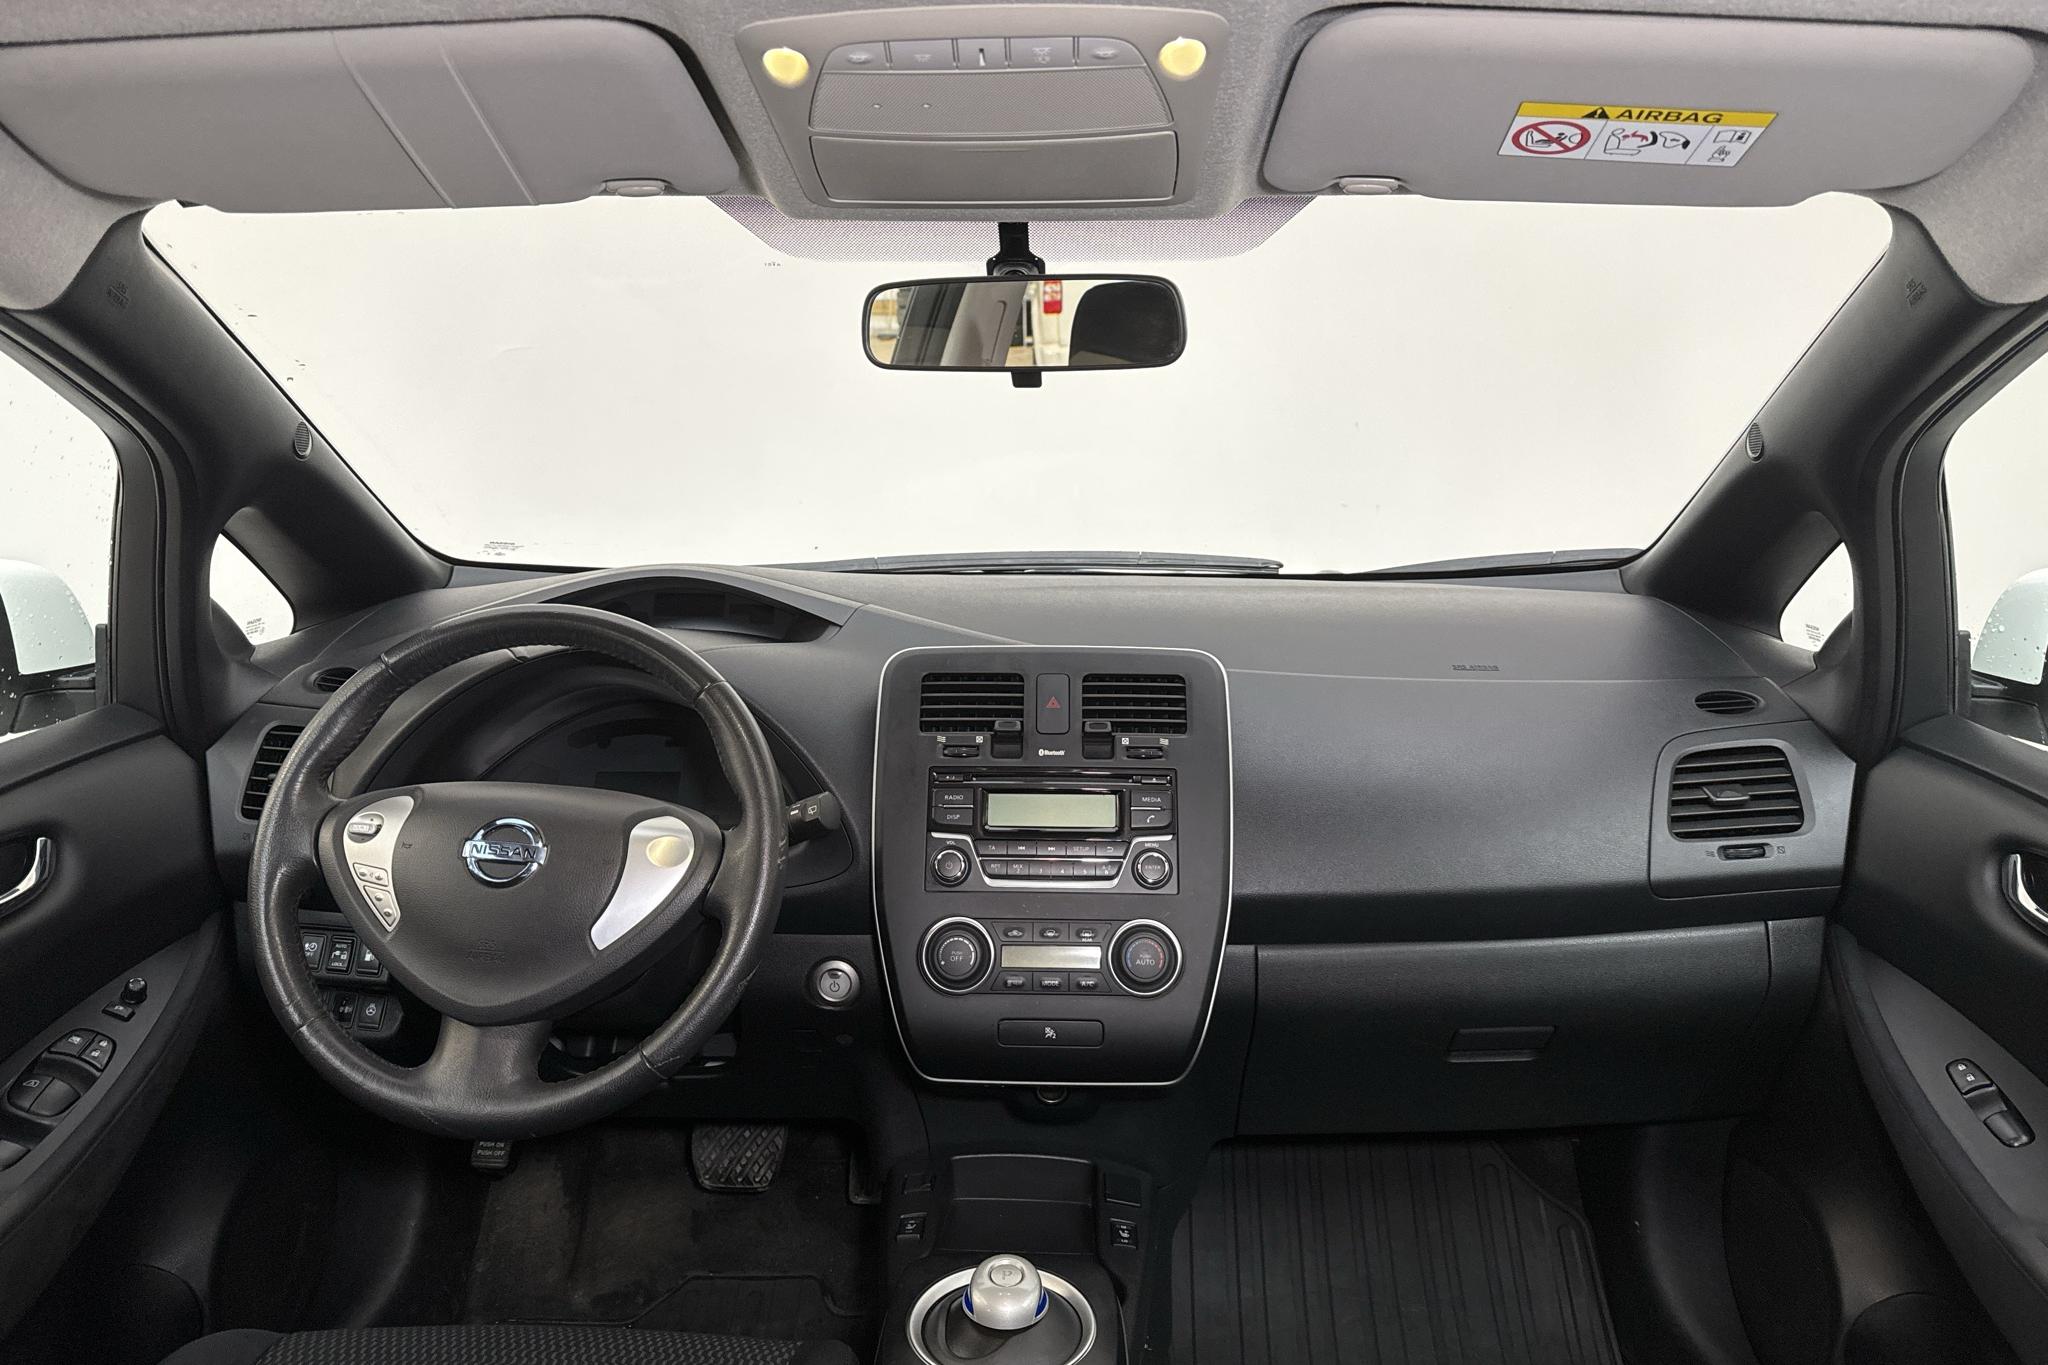 Nissan LEAF 5dr (109hk) - 3 389 mil - Automat - vit - 2016